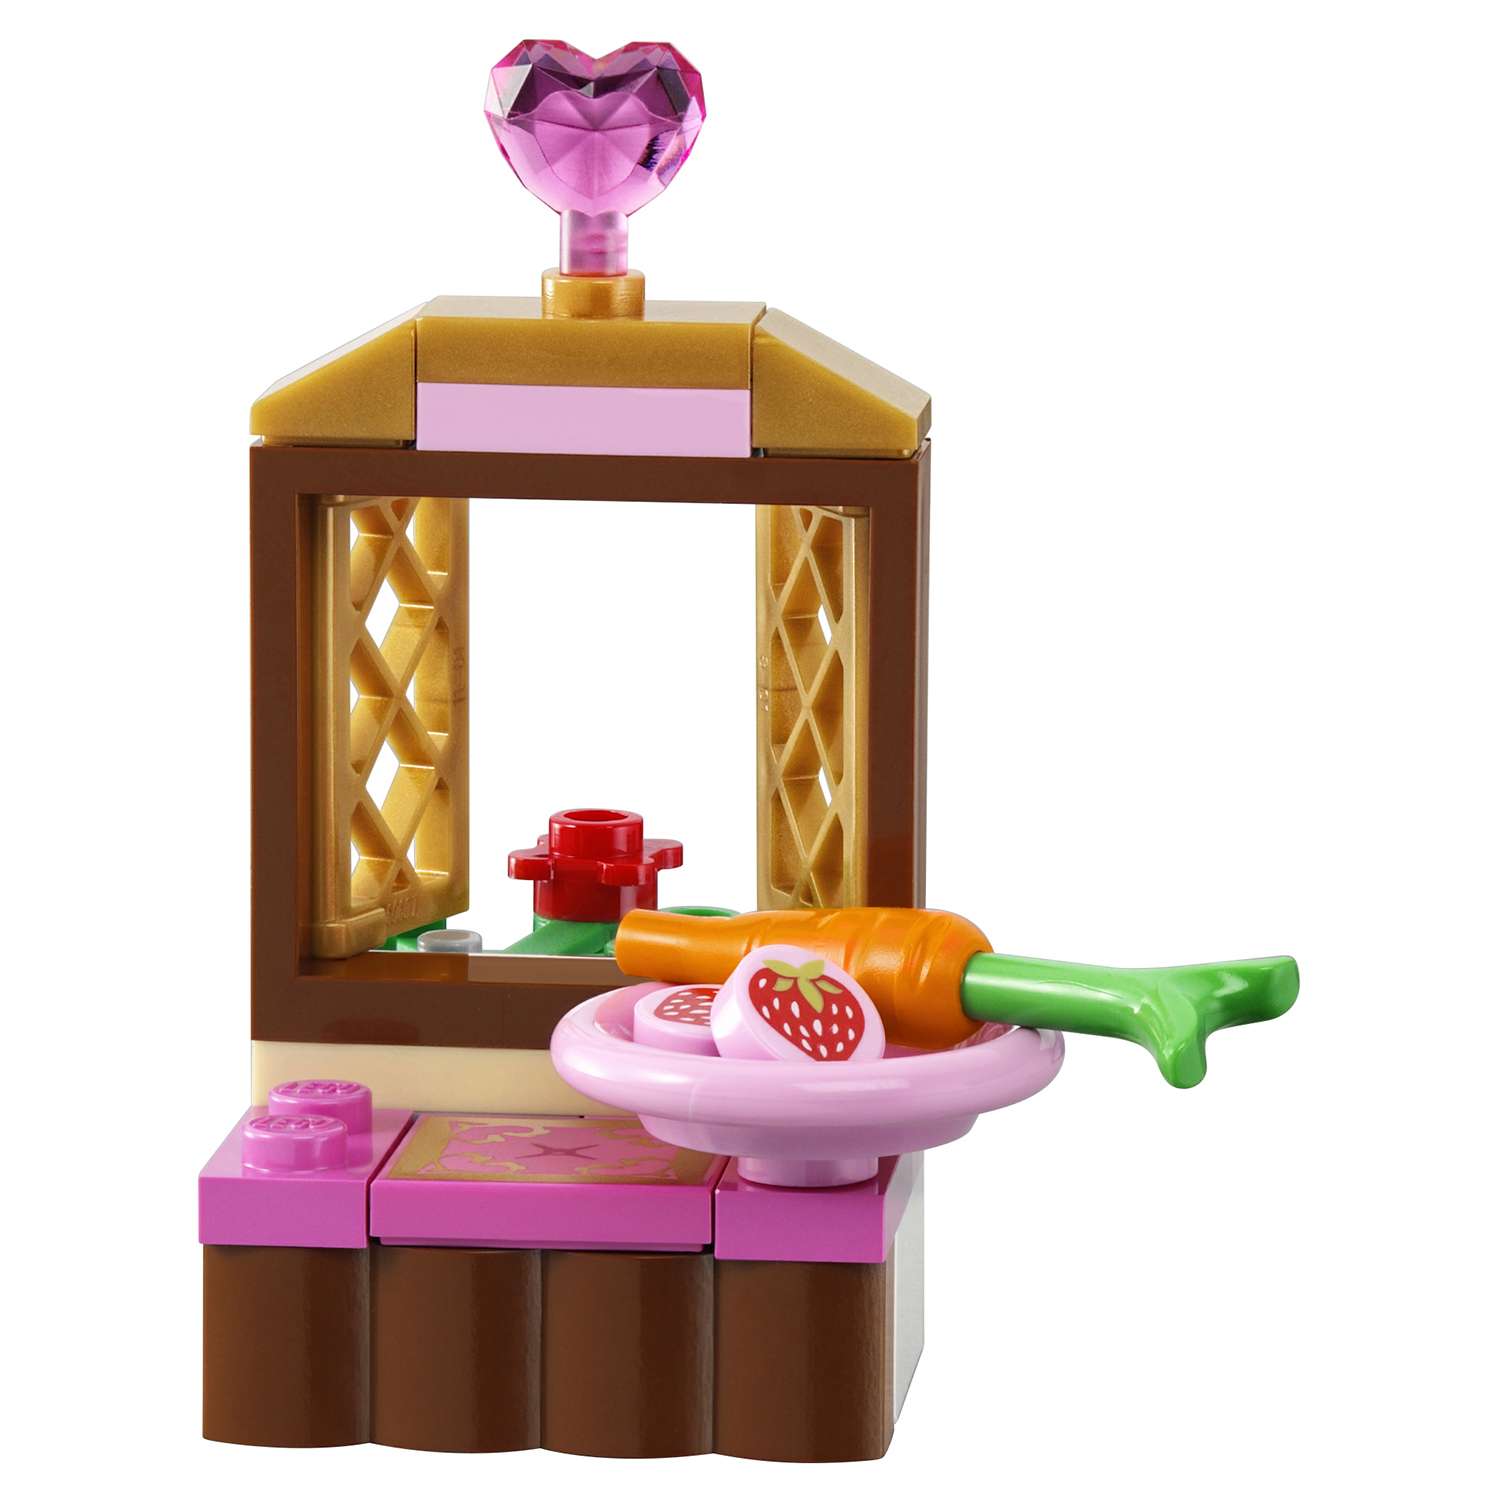 Конструктор LEGO Disney Princess Спальня Спящей красавицы (41060) - фото 11